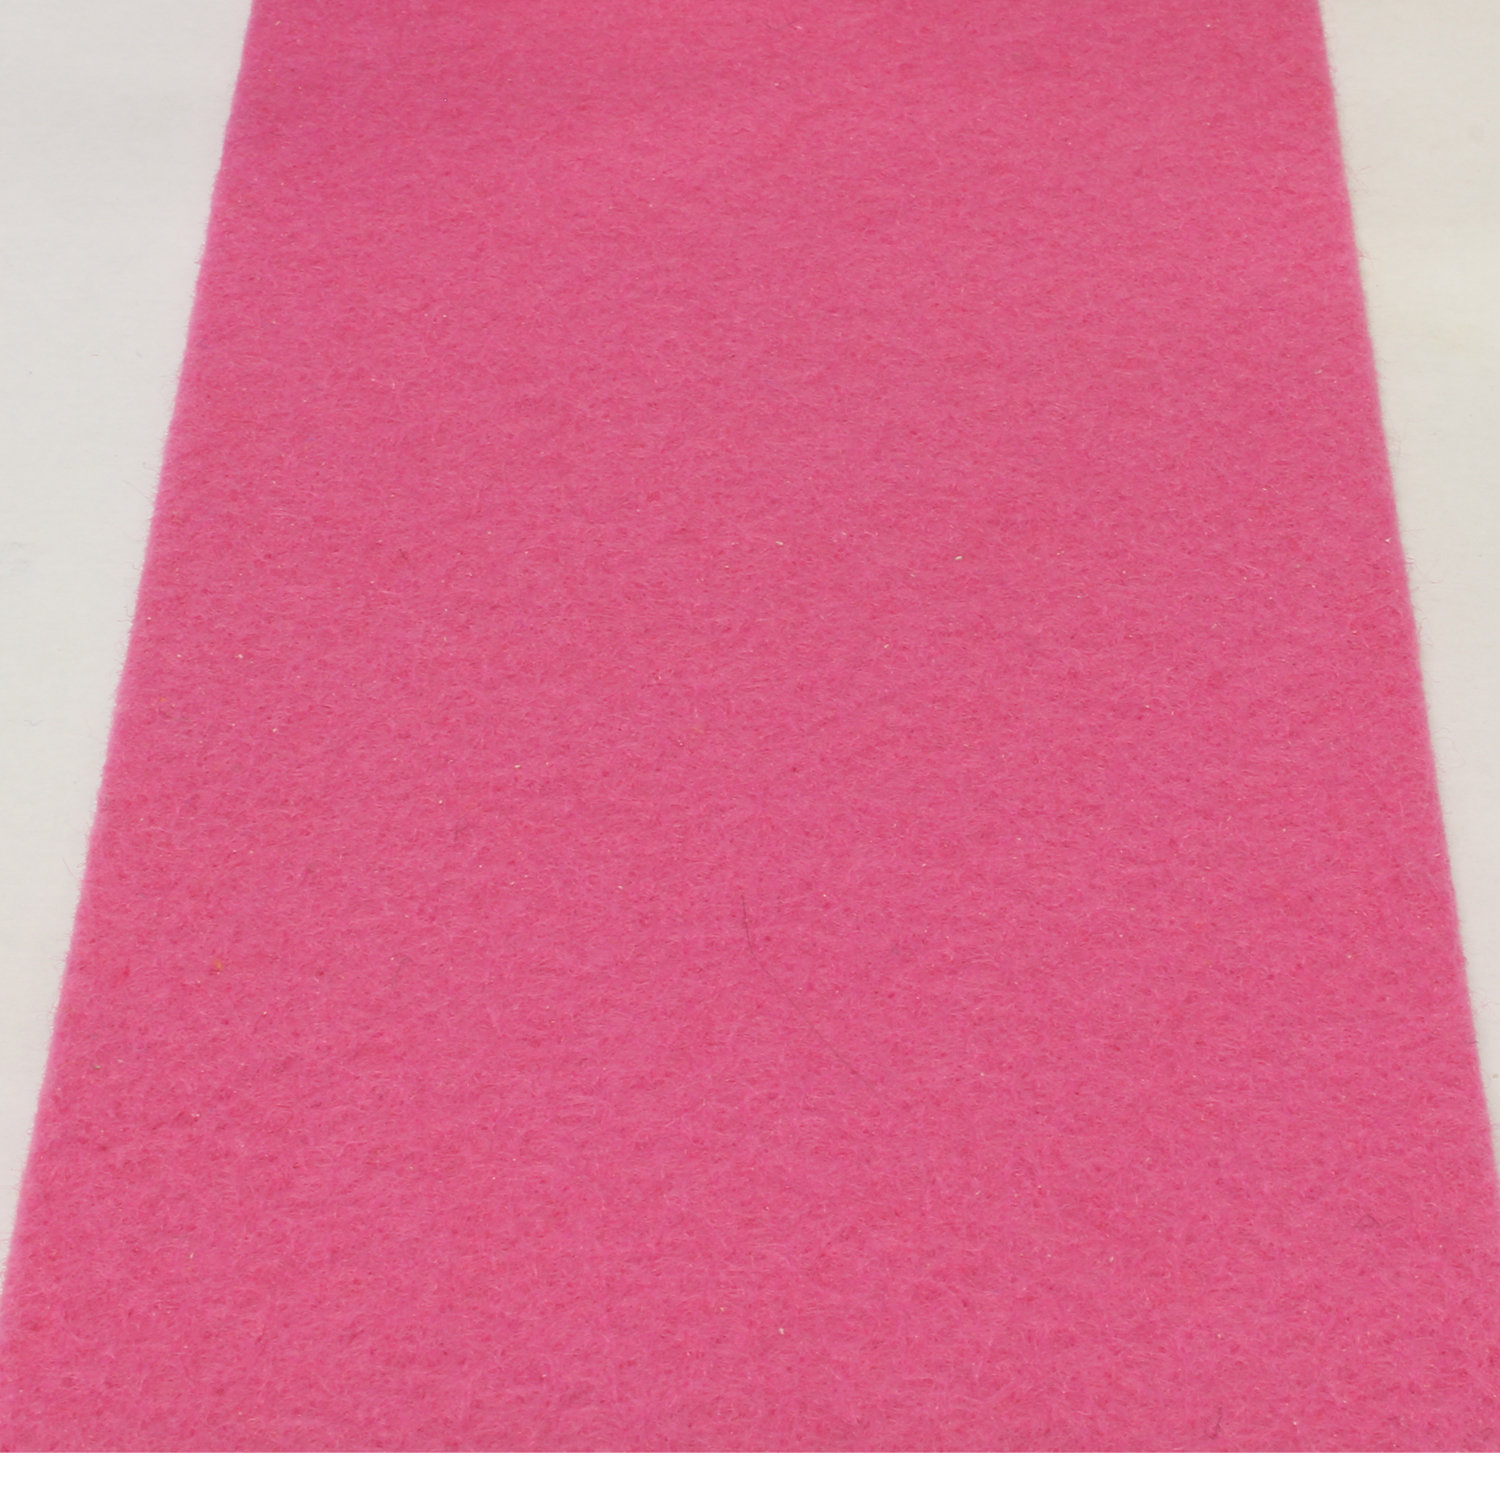 Ontmoedigen Gezichtsvermogen breedtegraad Roze loper 1 meter breed met verstevigde rug | Blueflower.nl